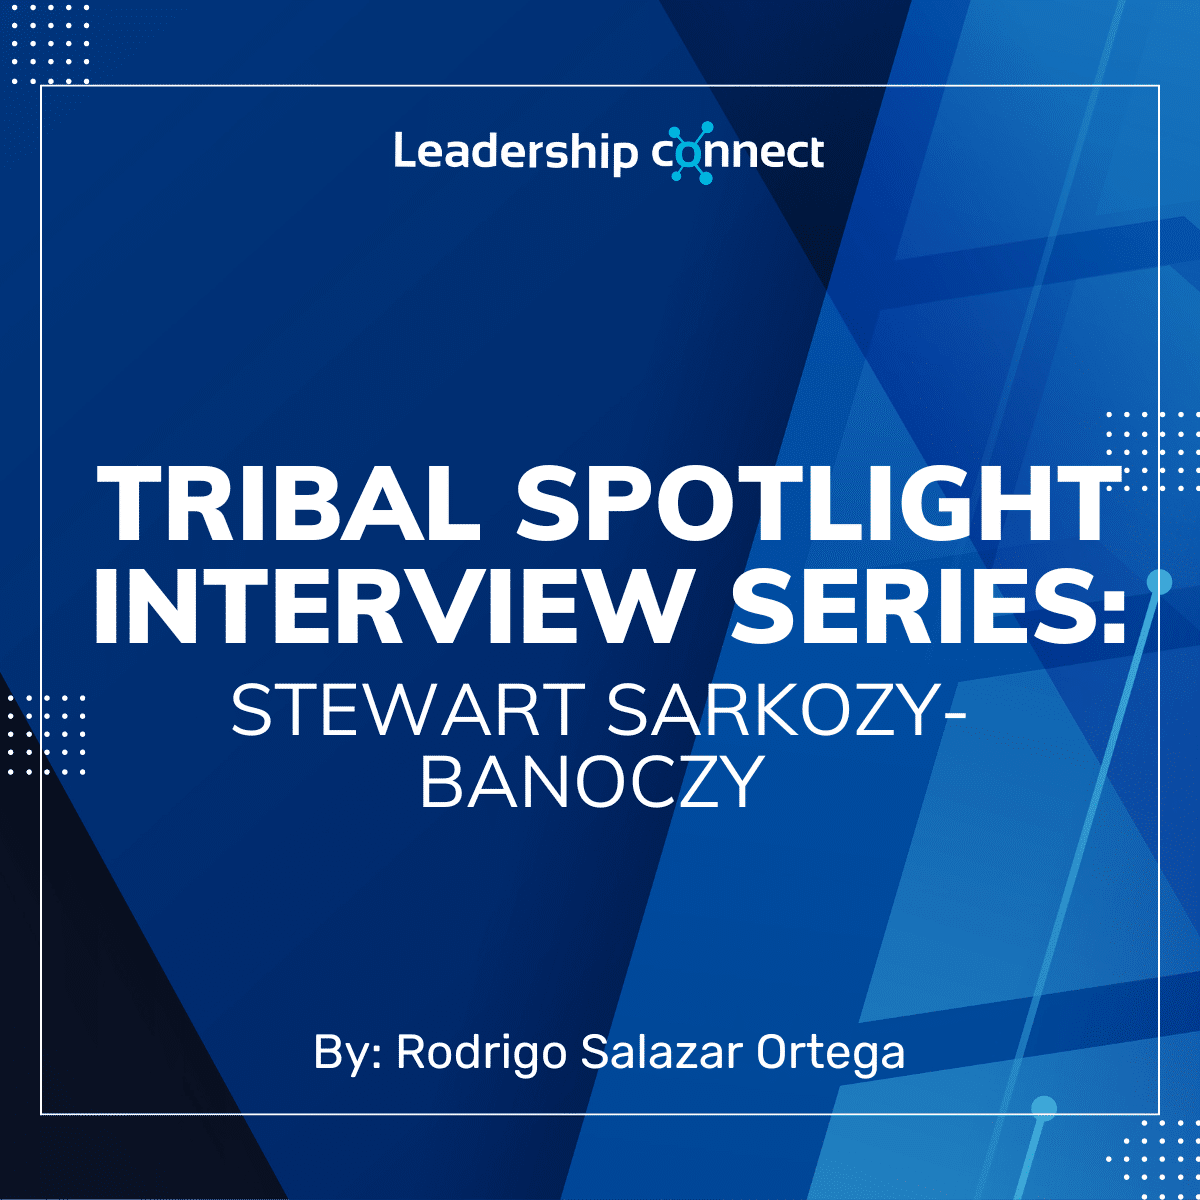 Tribal Spotlight Interview Series with Stewart Sarkozy-Banoczy